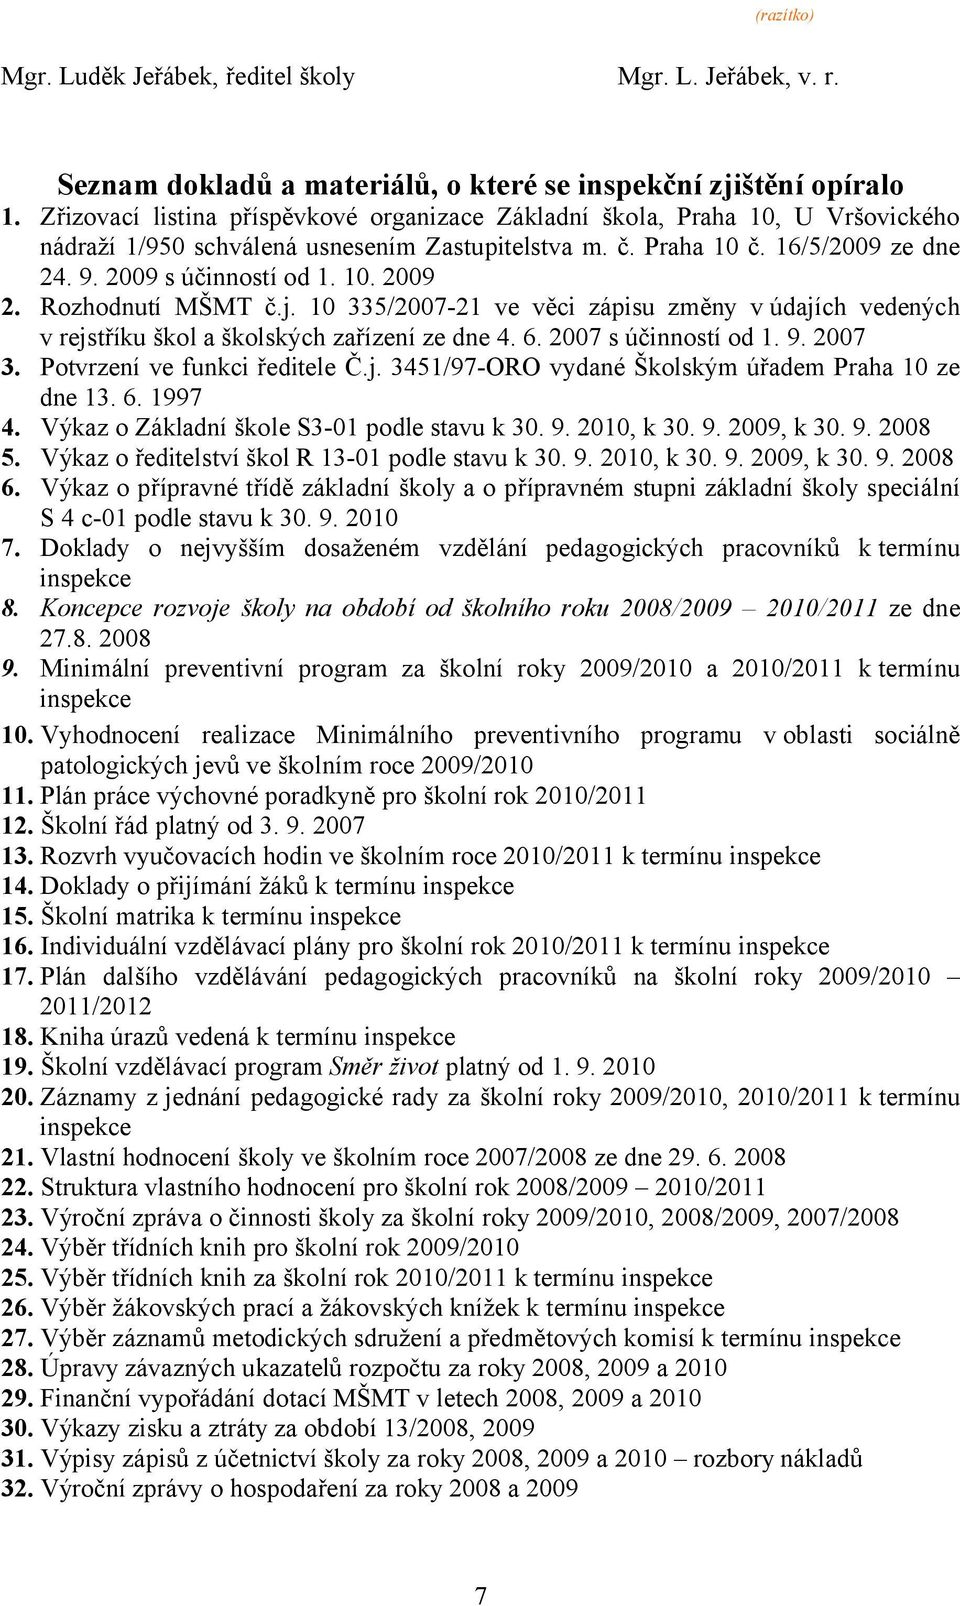 Rozhodnutí MŠMT č.j. 10 335/2007-21 ve věci zápisu změny v údajích vedených v rejstříku škol a školských zařízení ze dne 4. 6. 2007 s účinností od 1. 9. 2007 3. Potvrzení ve funkci ředitele Č.j. 3451/97-ORO vydané Školským úřadem Praha 10 ze dne 13.